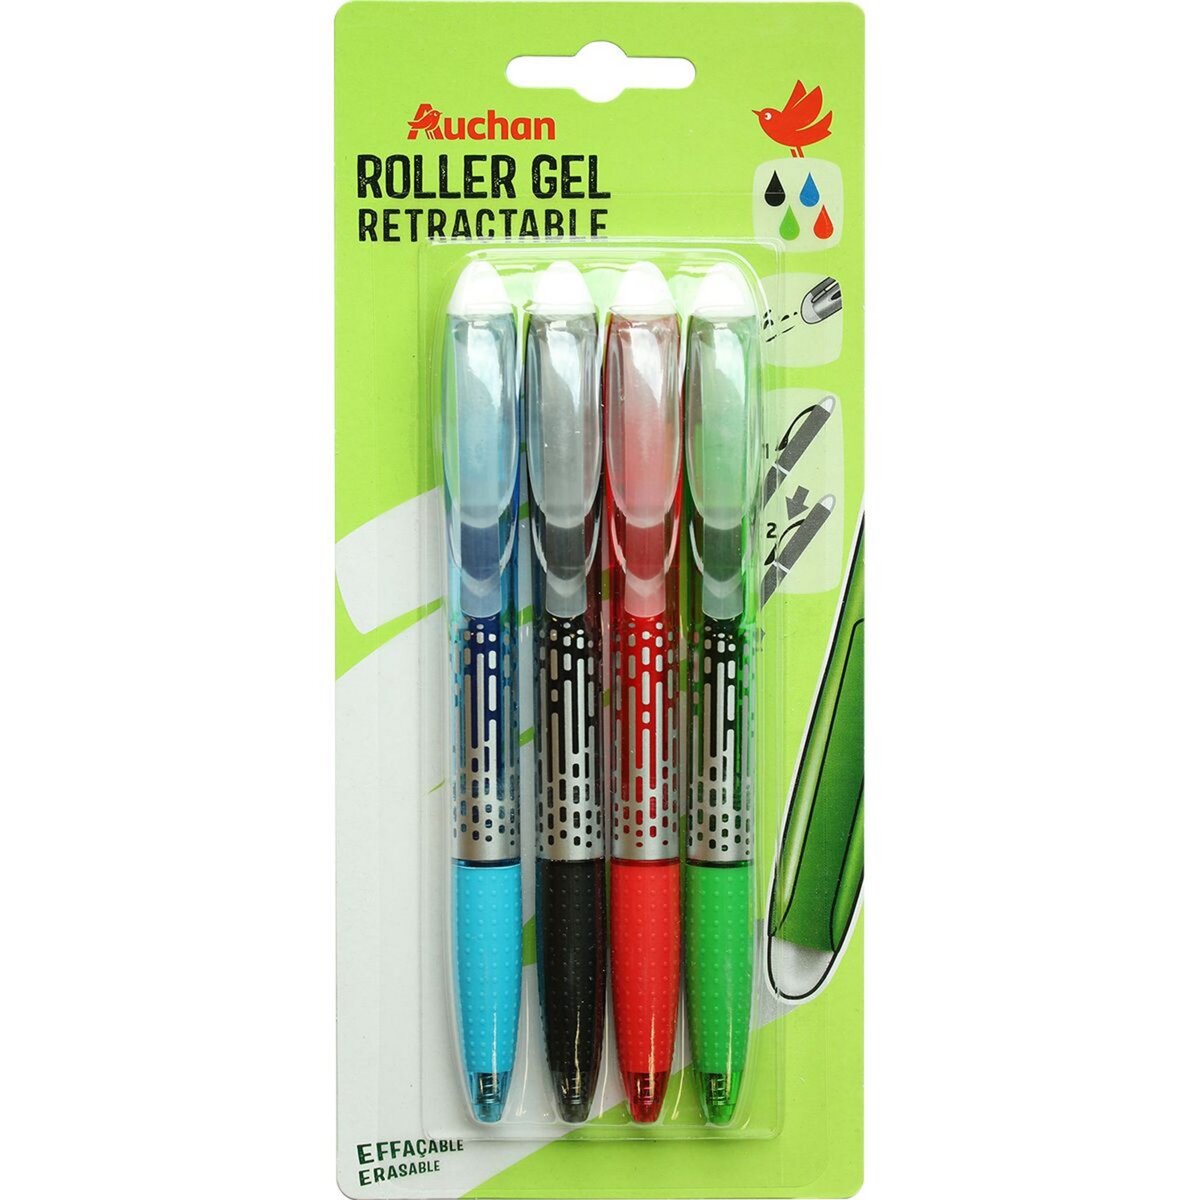 AUCHAN Lot de 4 stylos roller gel effaçables rétractables coloris assortis